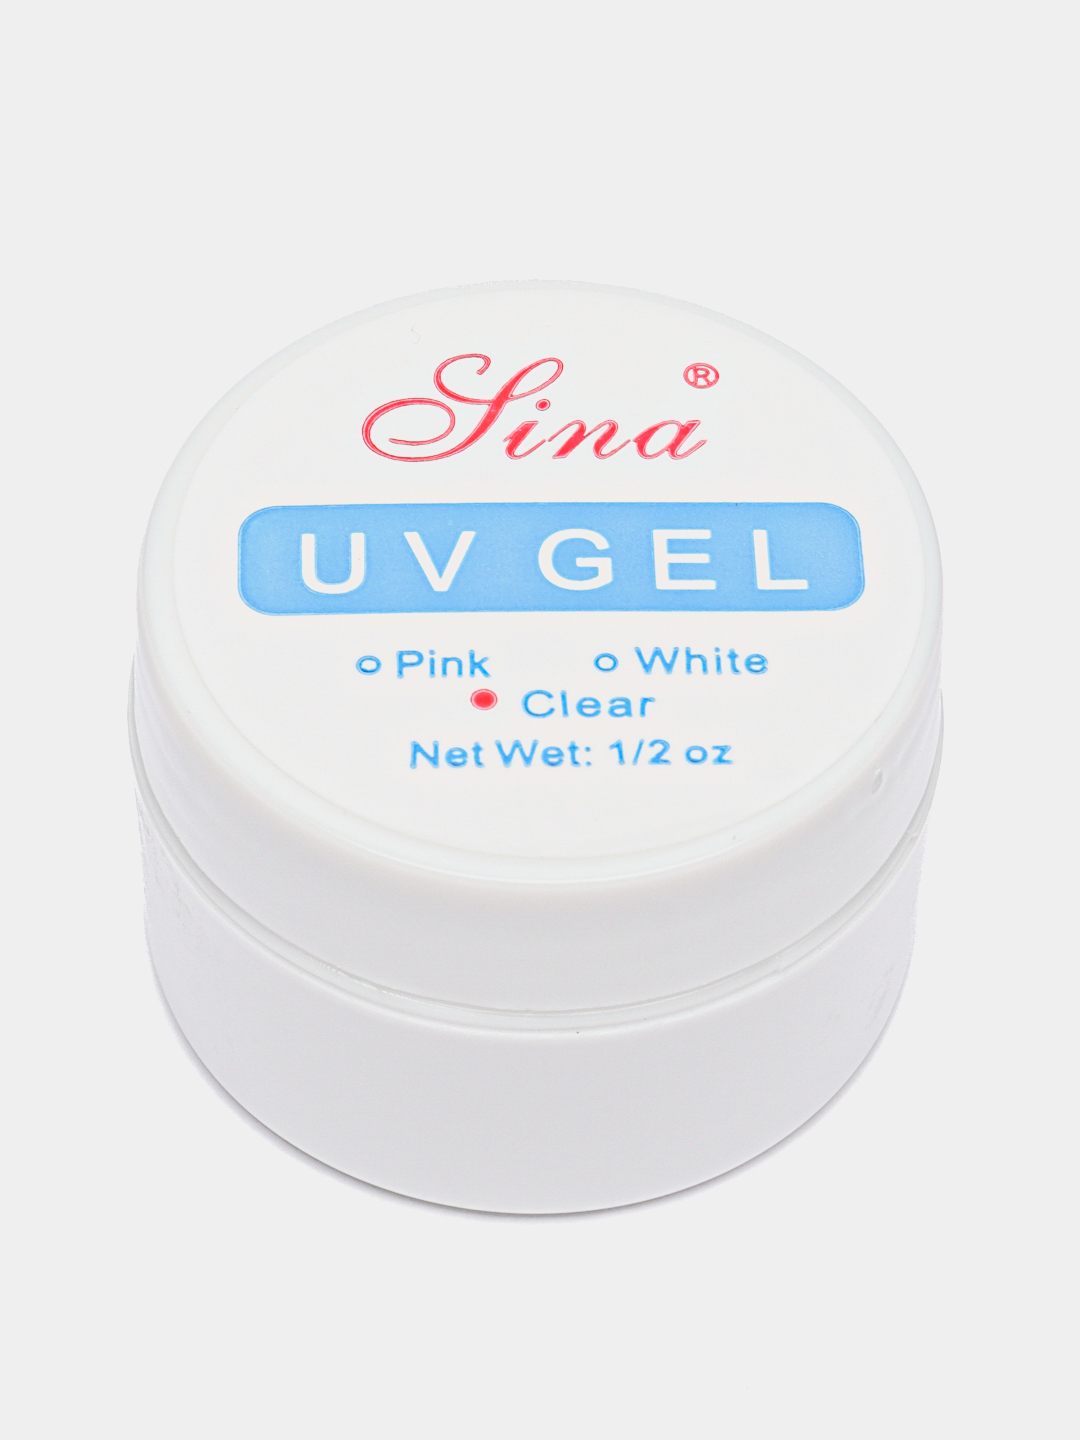 UV Gel Lina White